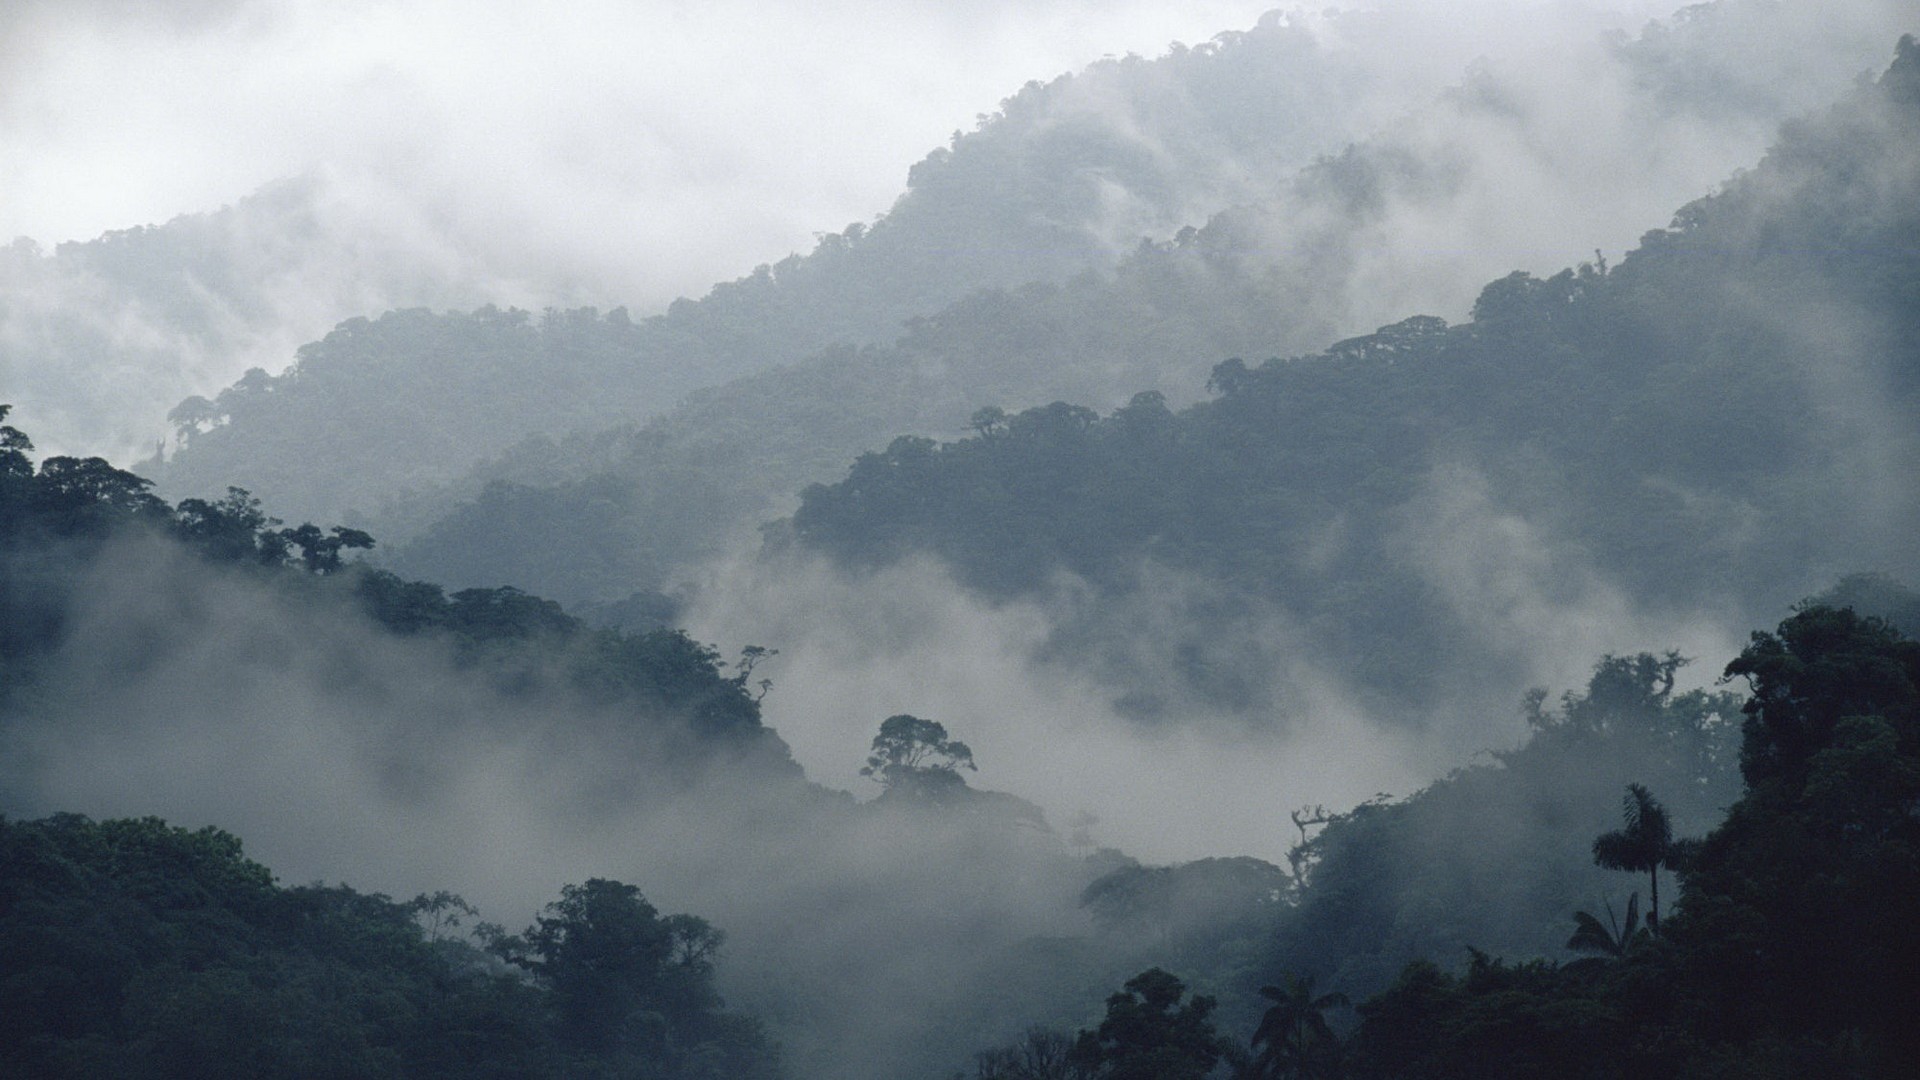 mountains, landscapes, fog, mist - desktop wallpaper